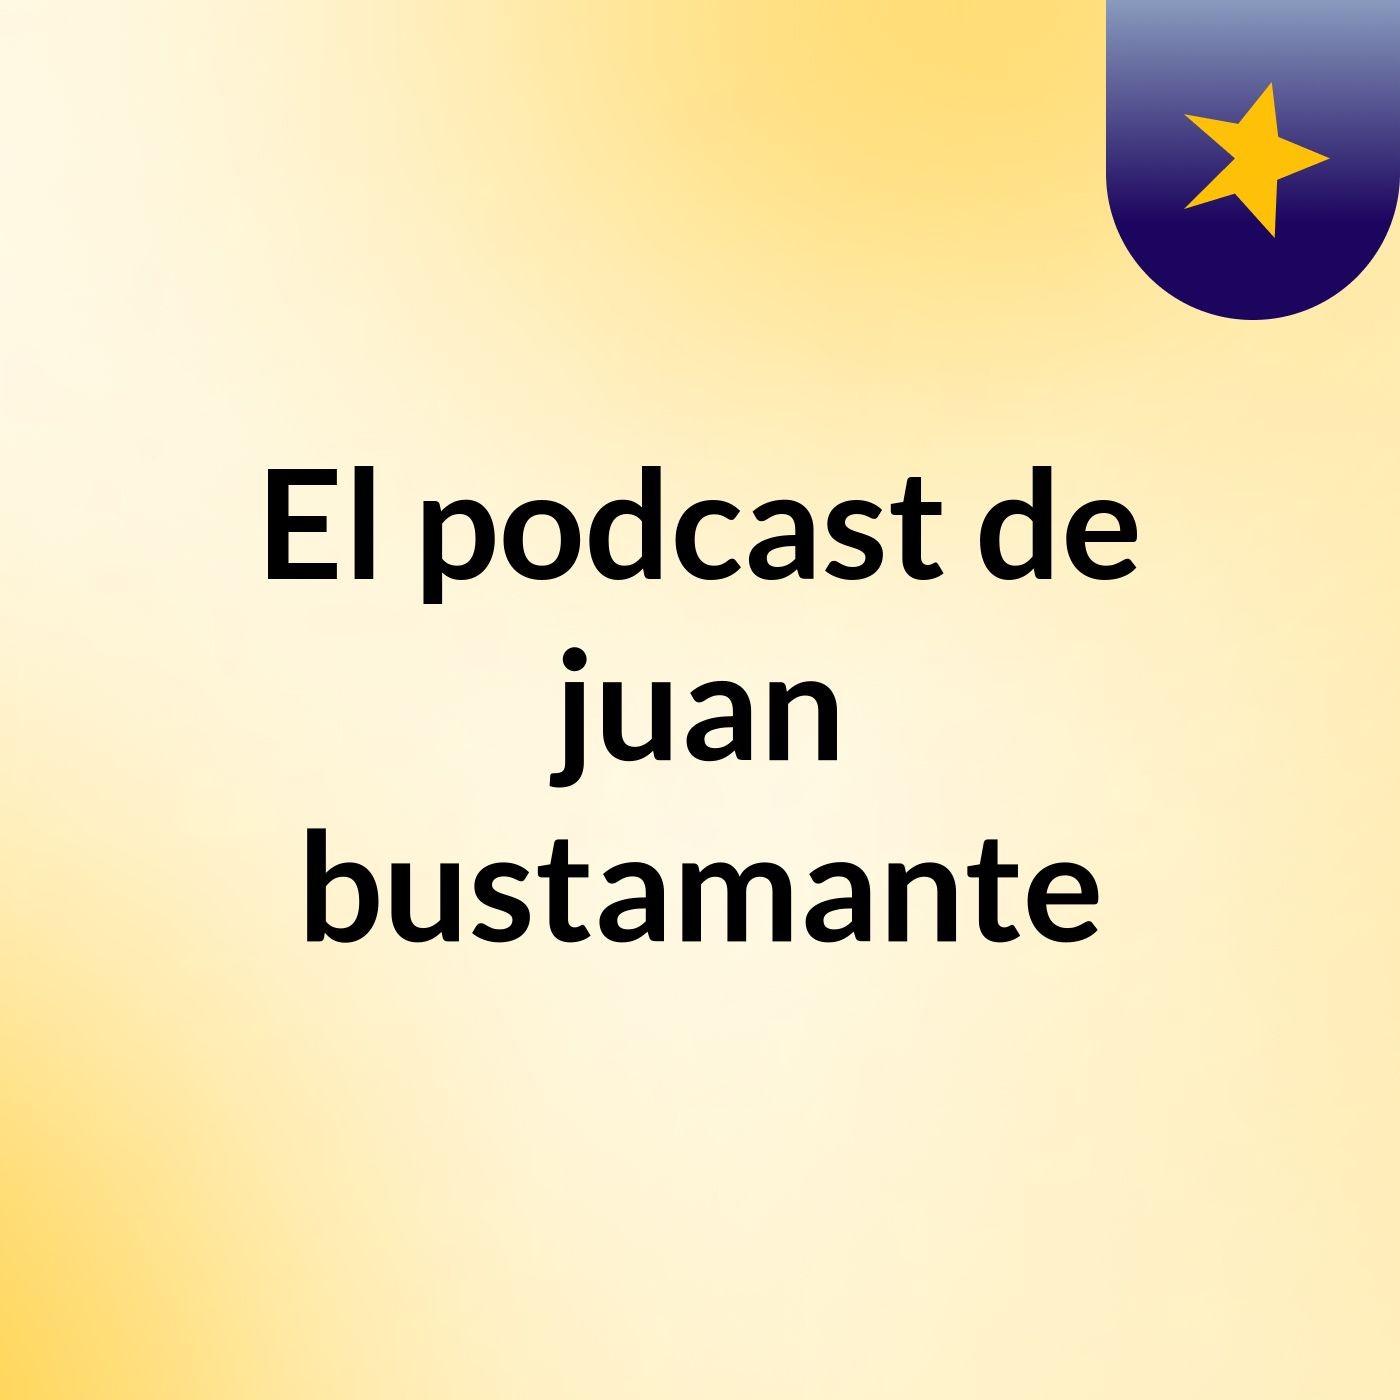 El podcast de juan bustamante